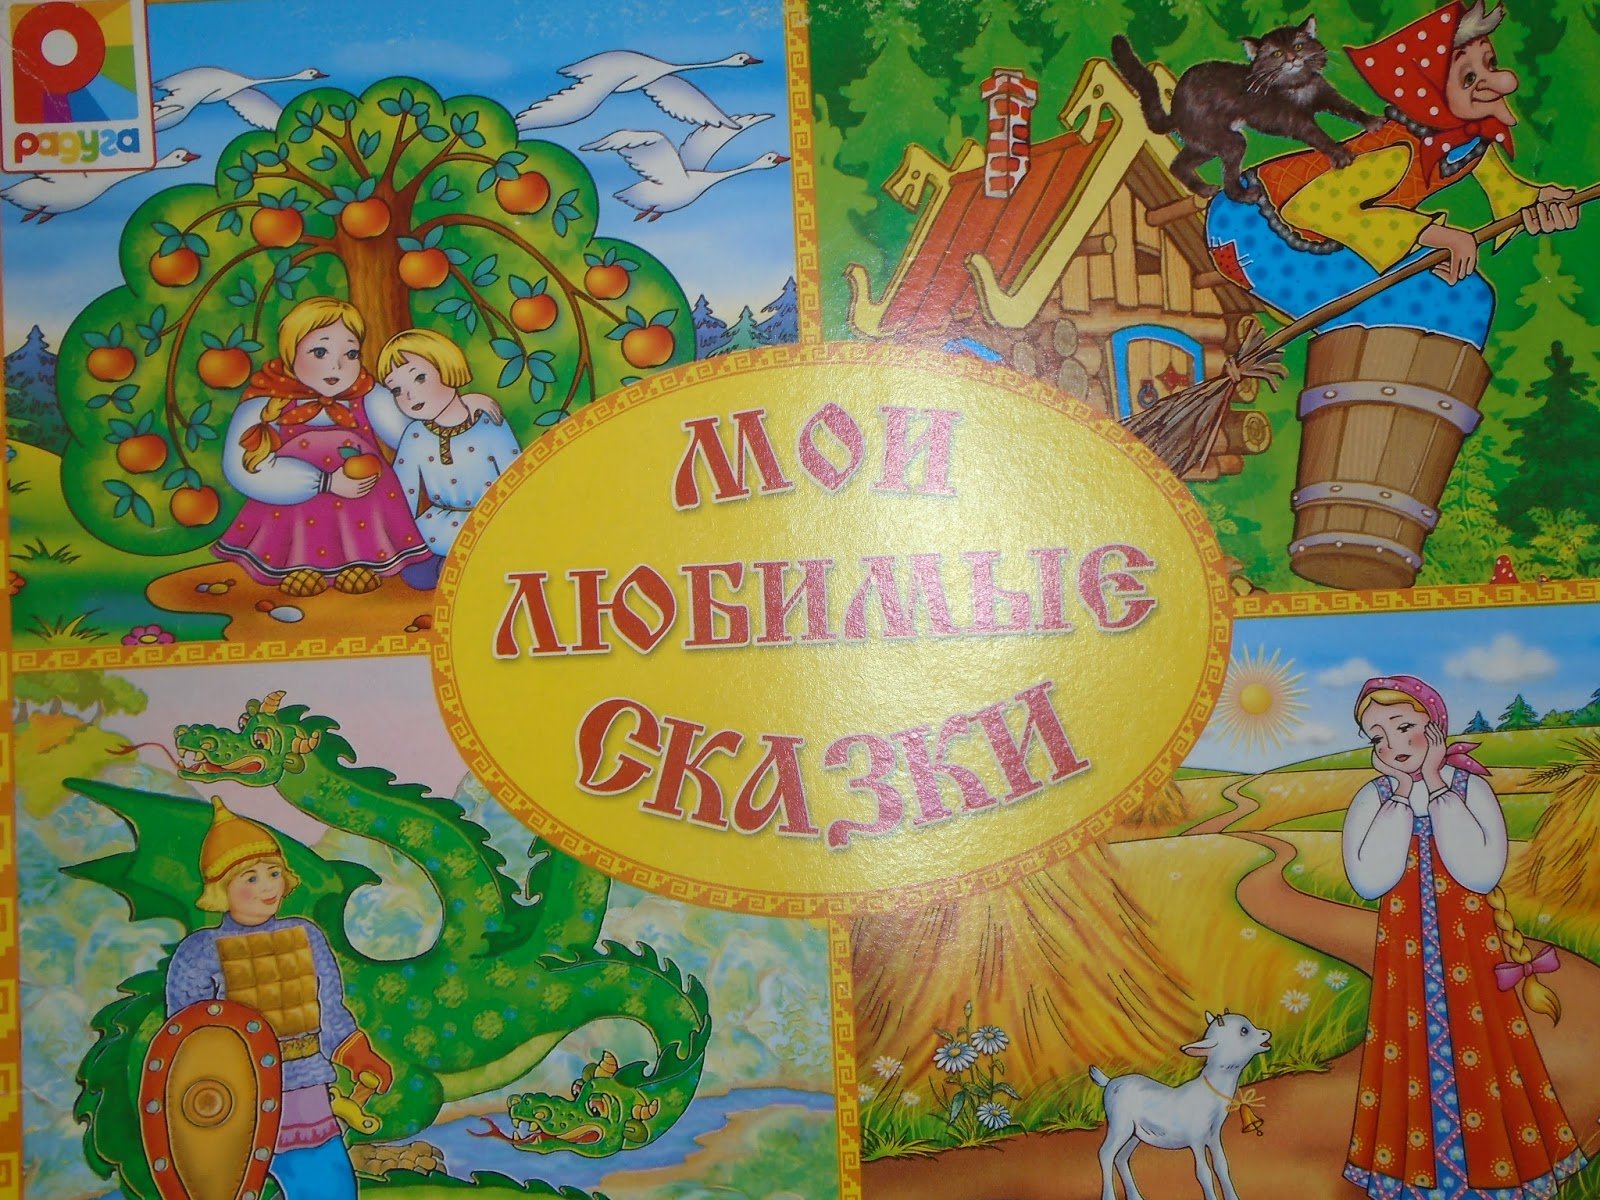 Изображение сказок. Сказки. Мои любимые сказки. Наши любимые сказки. Русские народные сказки обложка.